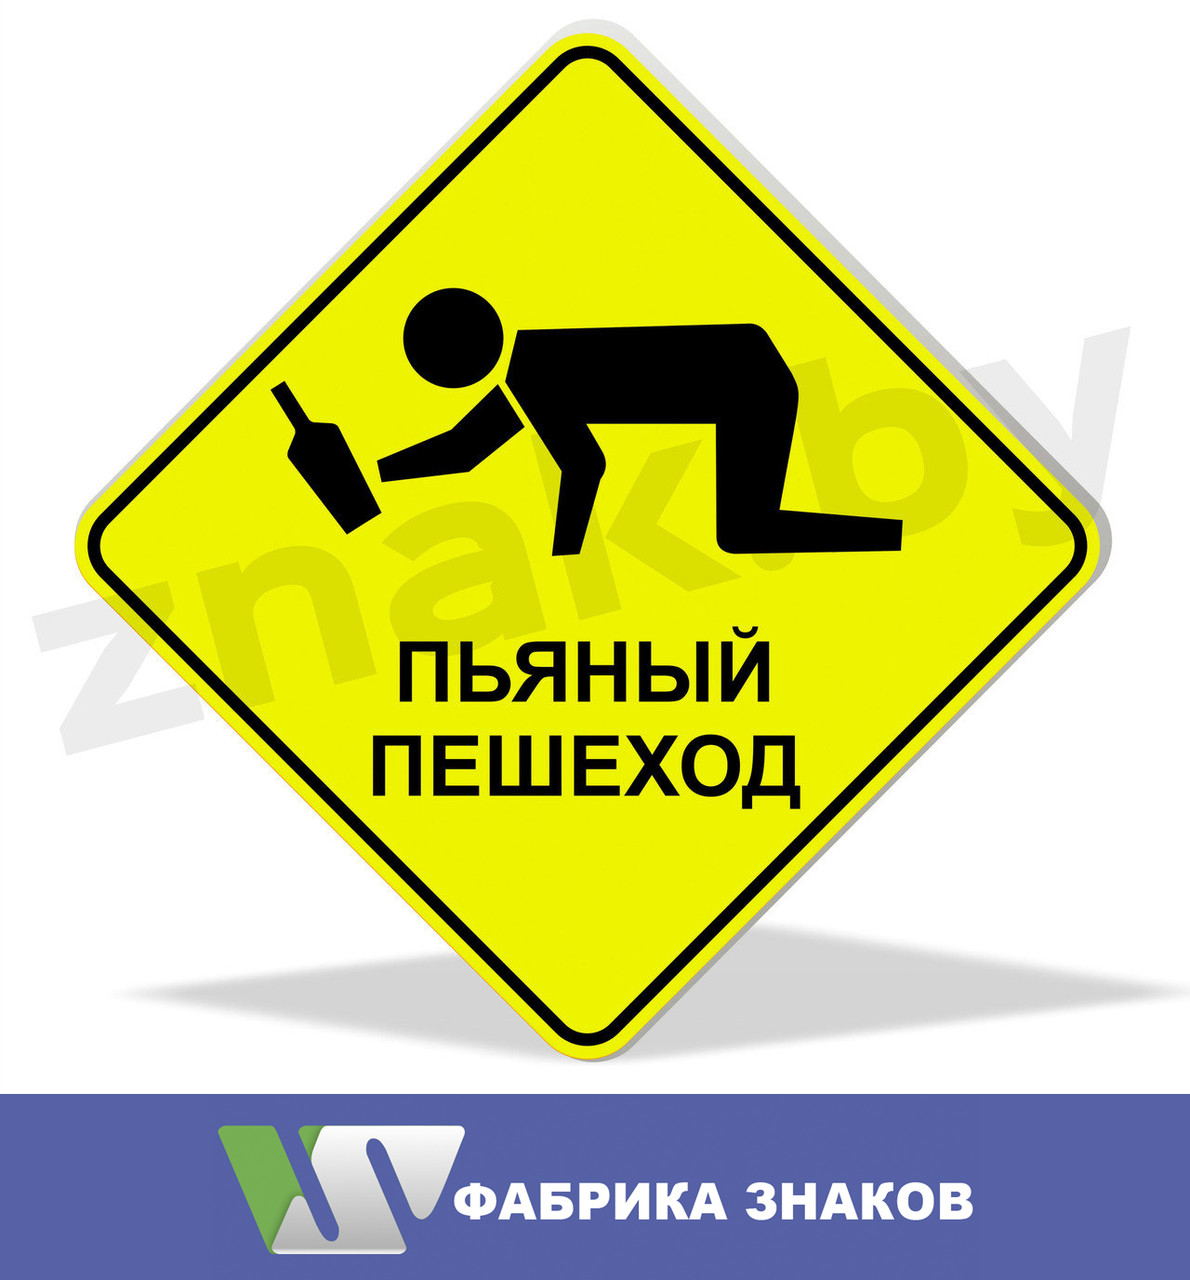 Дорожный знак "Осторожно! Пьяный пешеход", фото 1